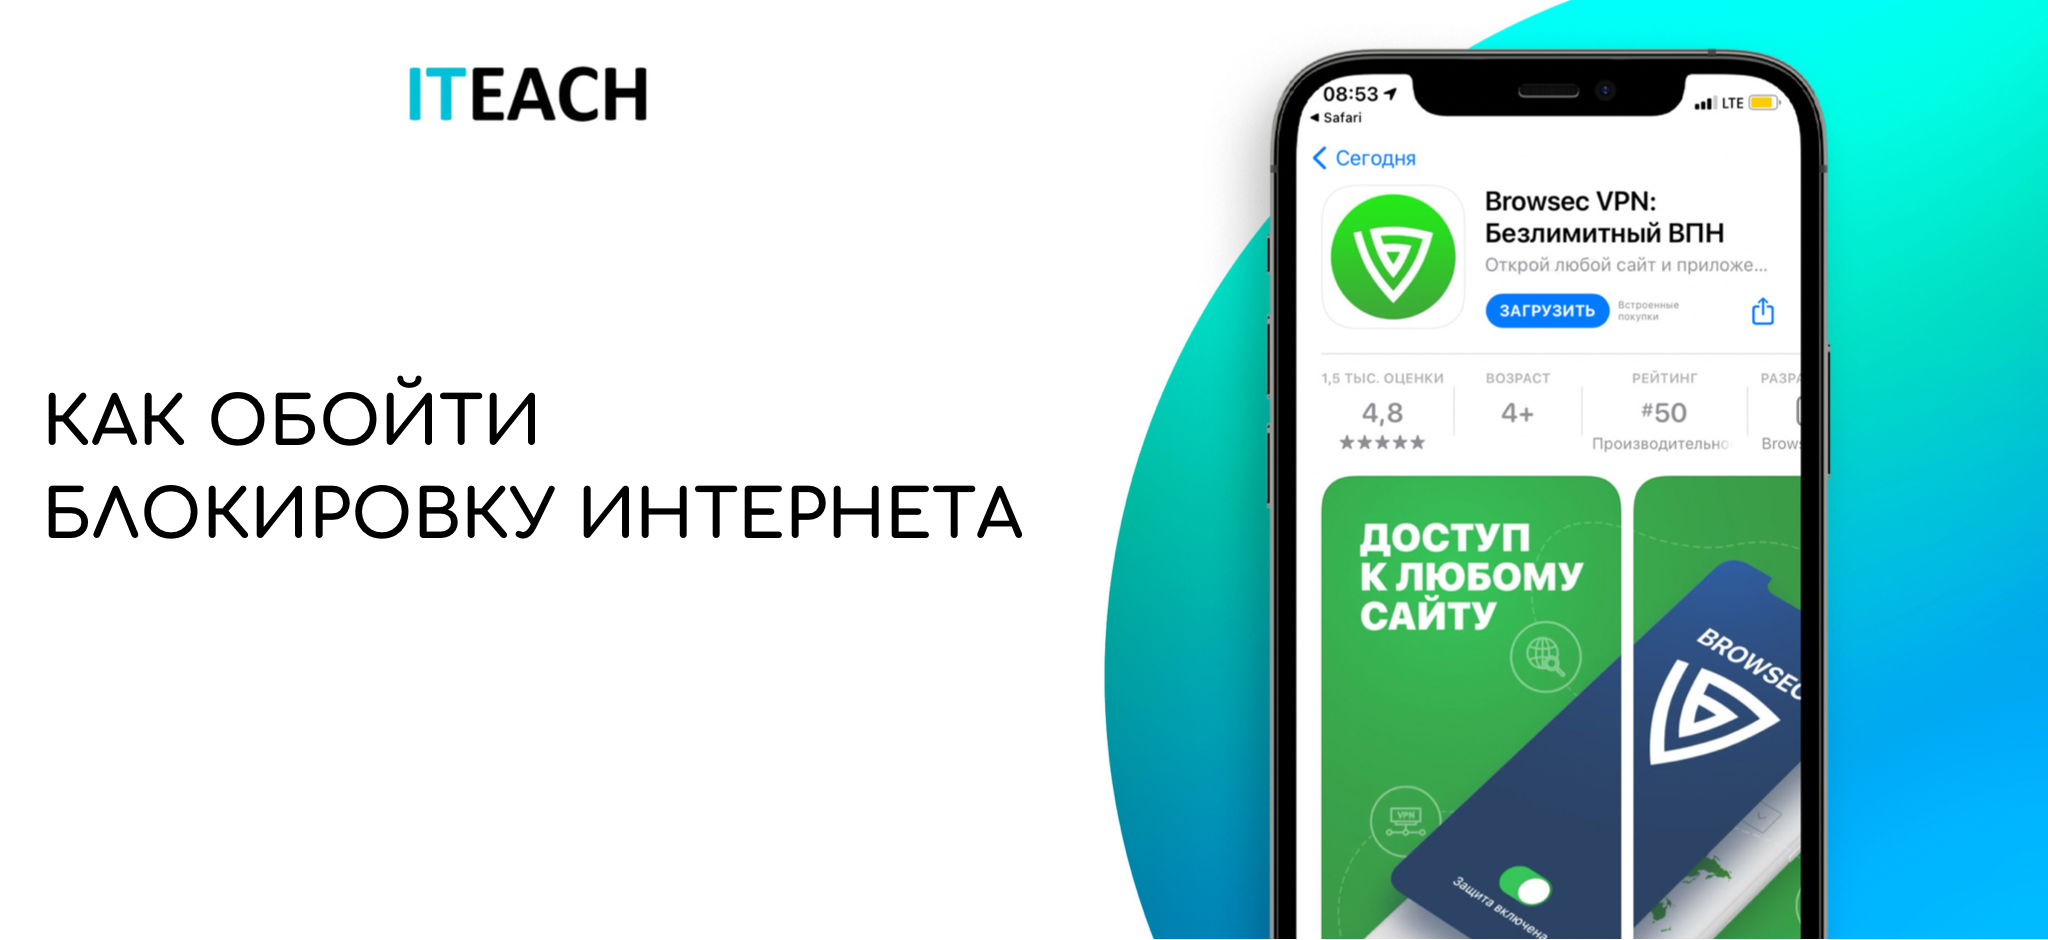 Как обойти блокировку телеграмма в казахстане на андроид фото 15